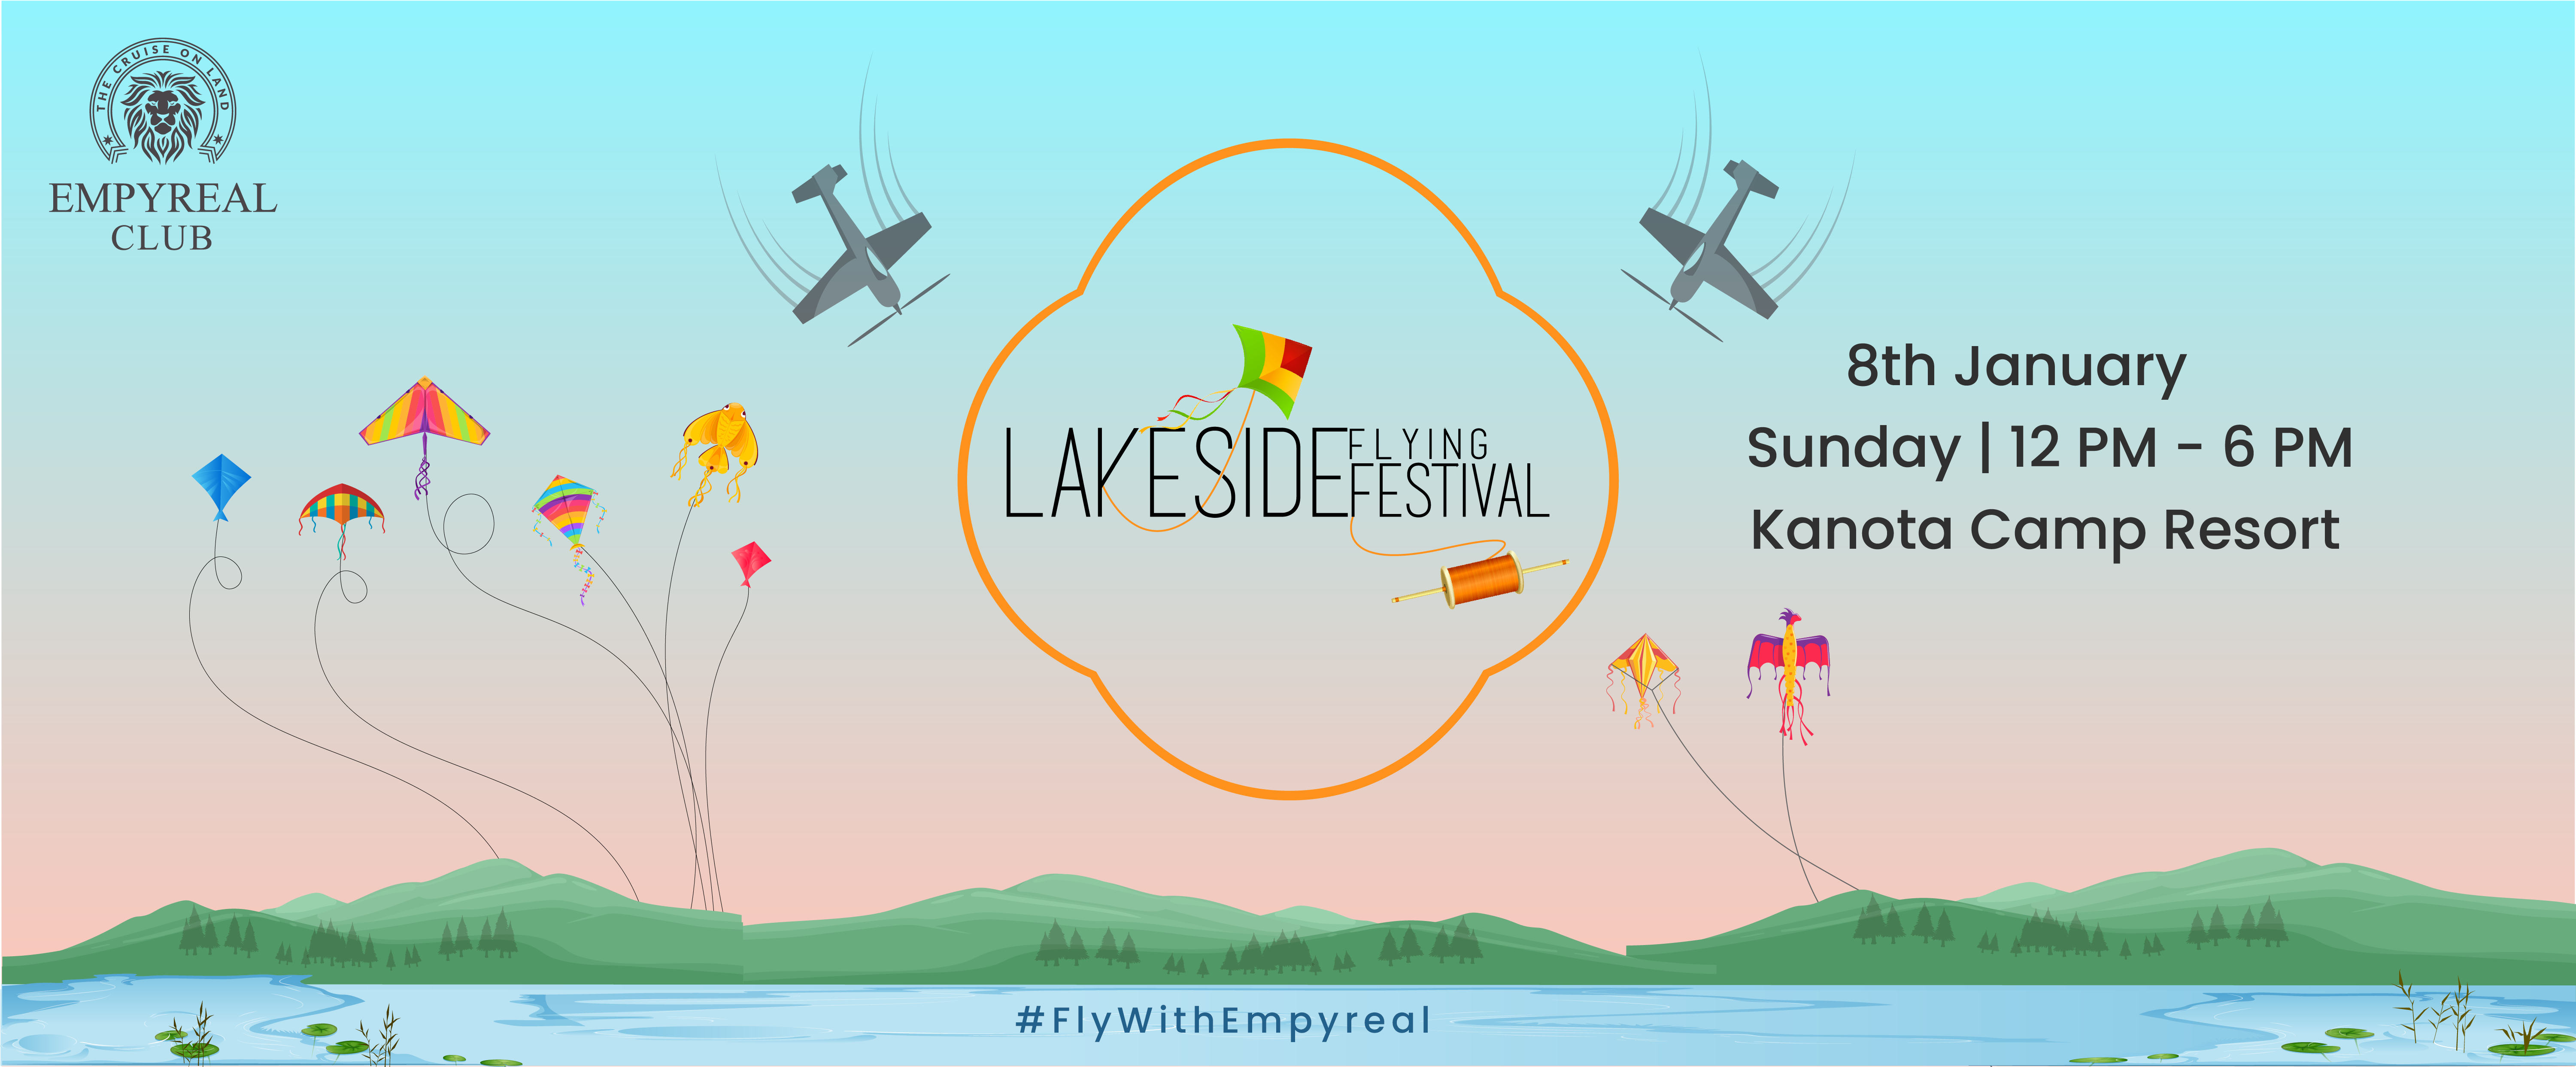 Lake-side Flying Festival